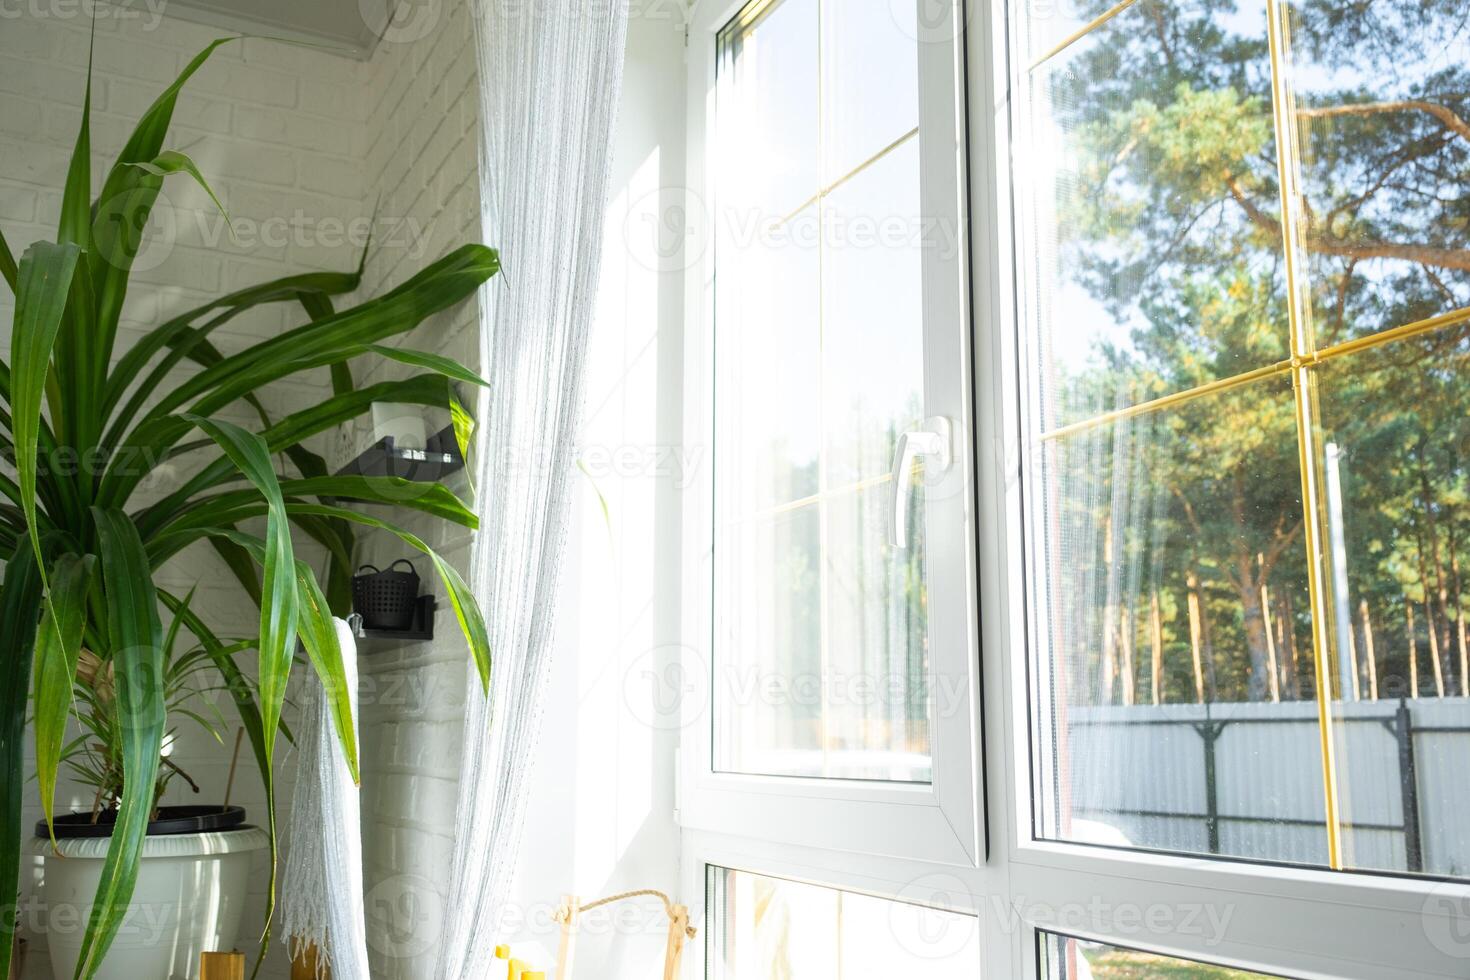 Fenster von Innerhalb das Haus Plastik doppelt verglast Fenster Aussicht draußen zu das sonnig Wald - - Innere Salon mit eingetopft Pflanzen, sauber Glas nach Reinigung Fenster, geschlossen Fenster foto